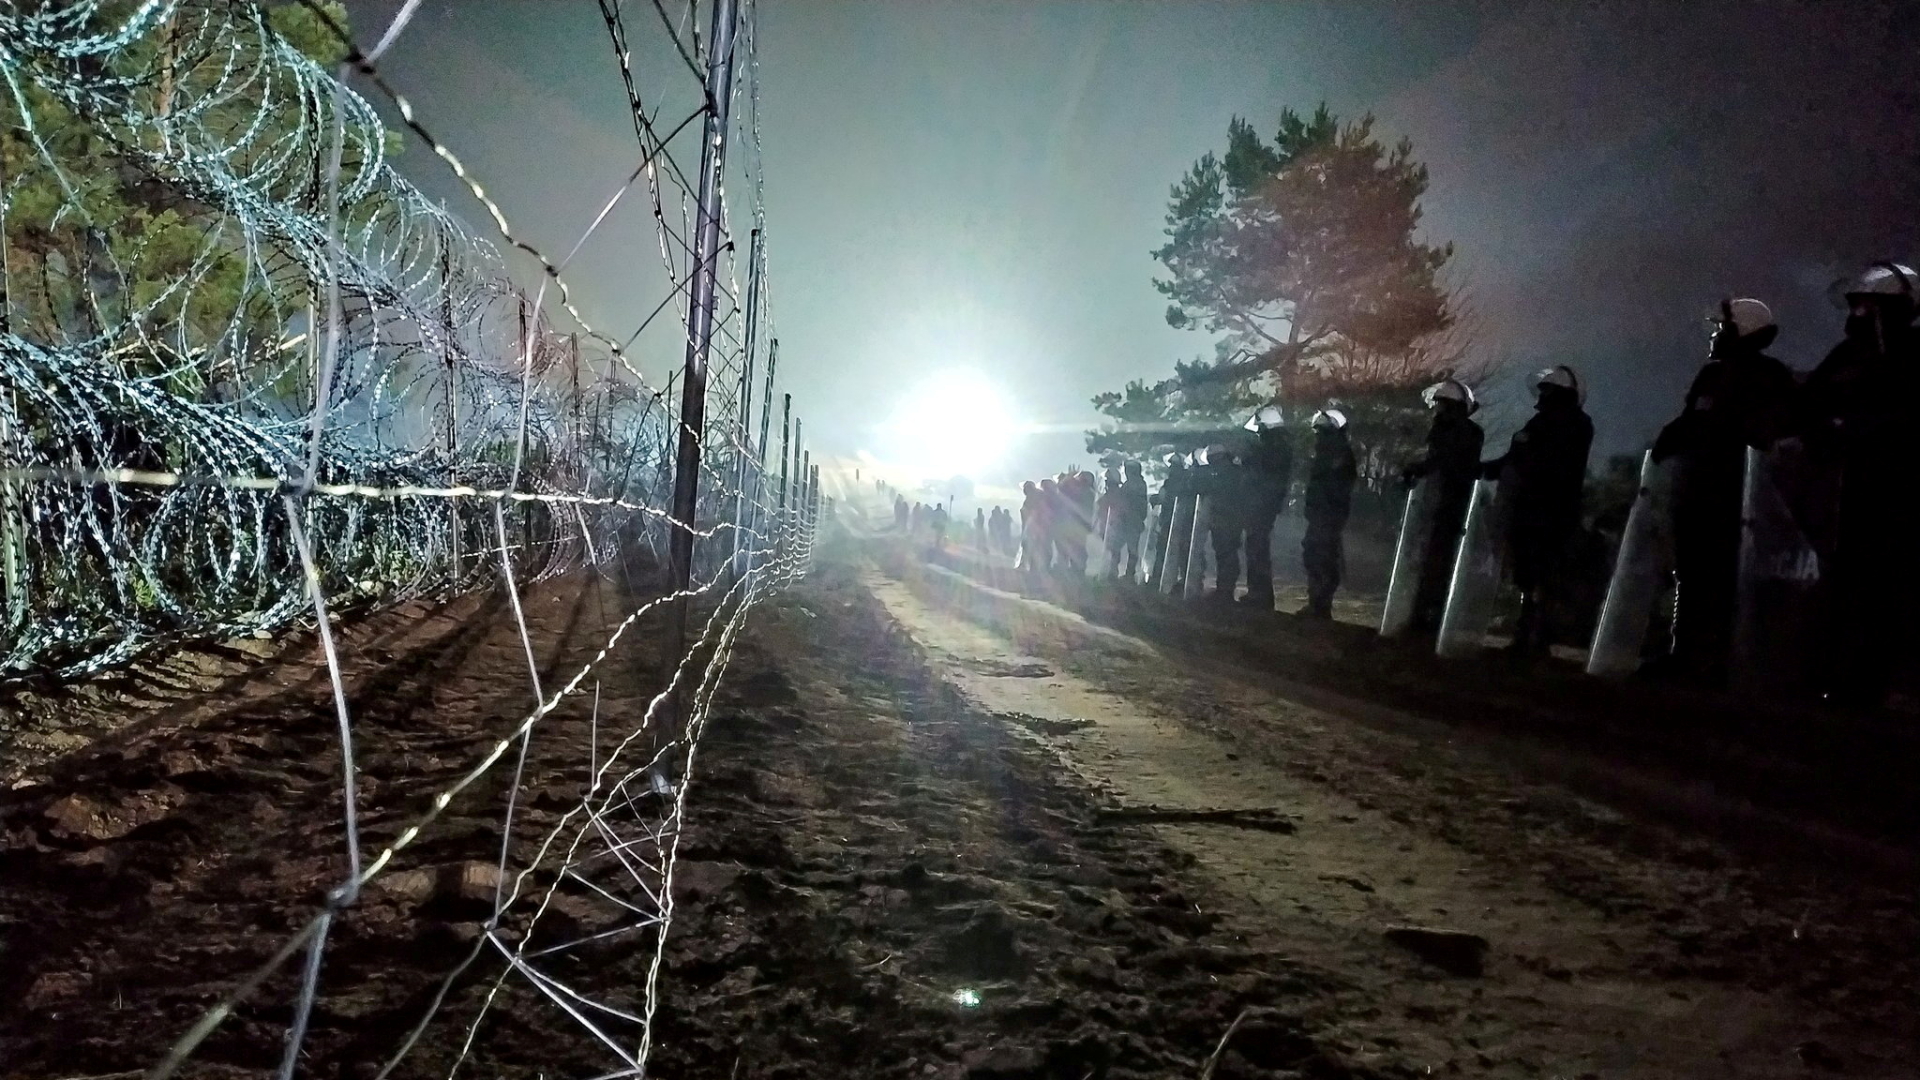 Polnische Polizei bewacht die Grenze zwischen Polen und Belarus. | via REUTERS